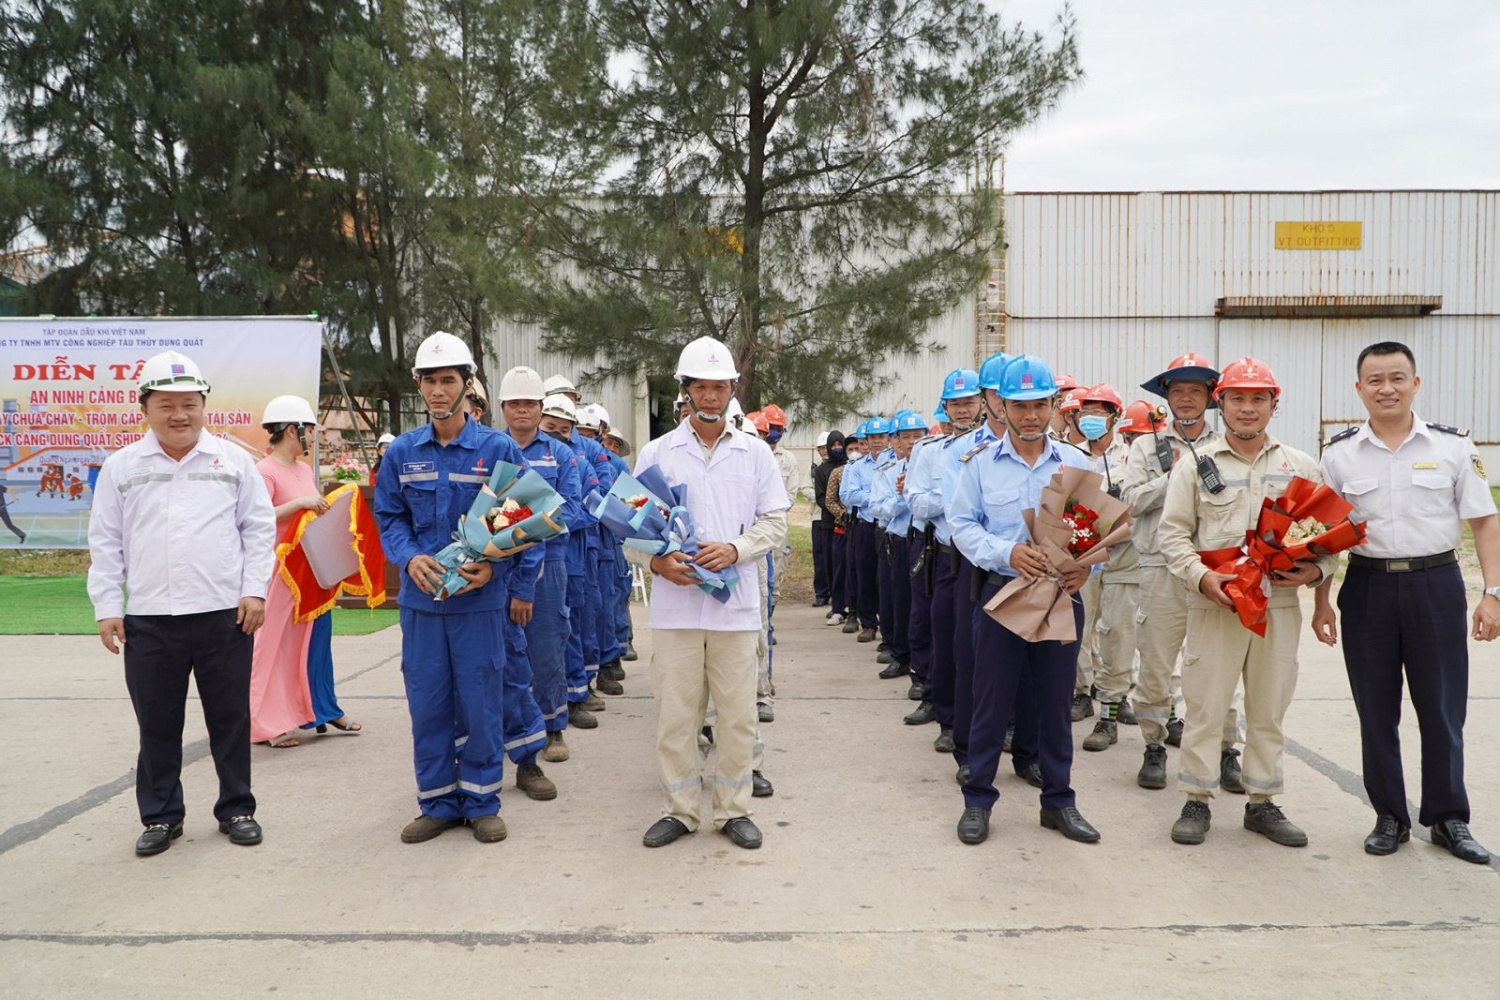 Ông Nguyễn Hồng Chiến, Phó Tổng giám đốc DQS (ngoài cùng bên trái) và ông Nguyễn Văn Minh (ngoài cùng bên phải), Phó Giám đốc Cảng vụ Hàng Hải tặng hoa cho các đơn vị tham gia diễn tập